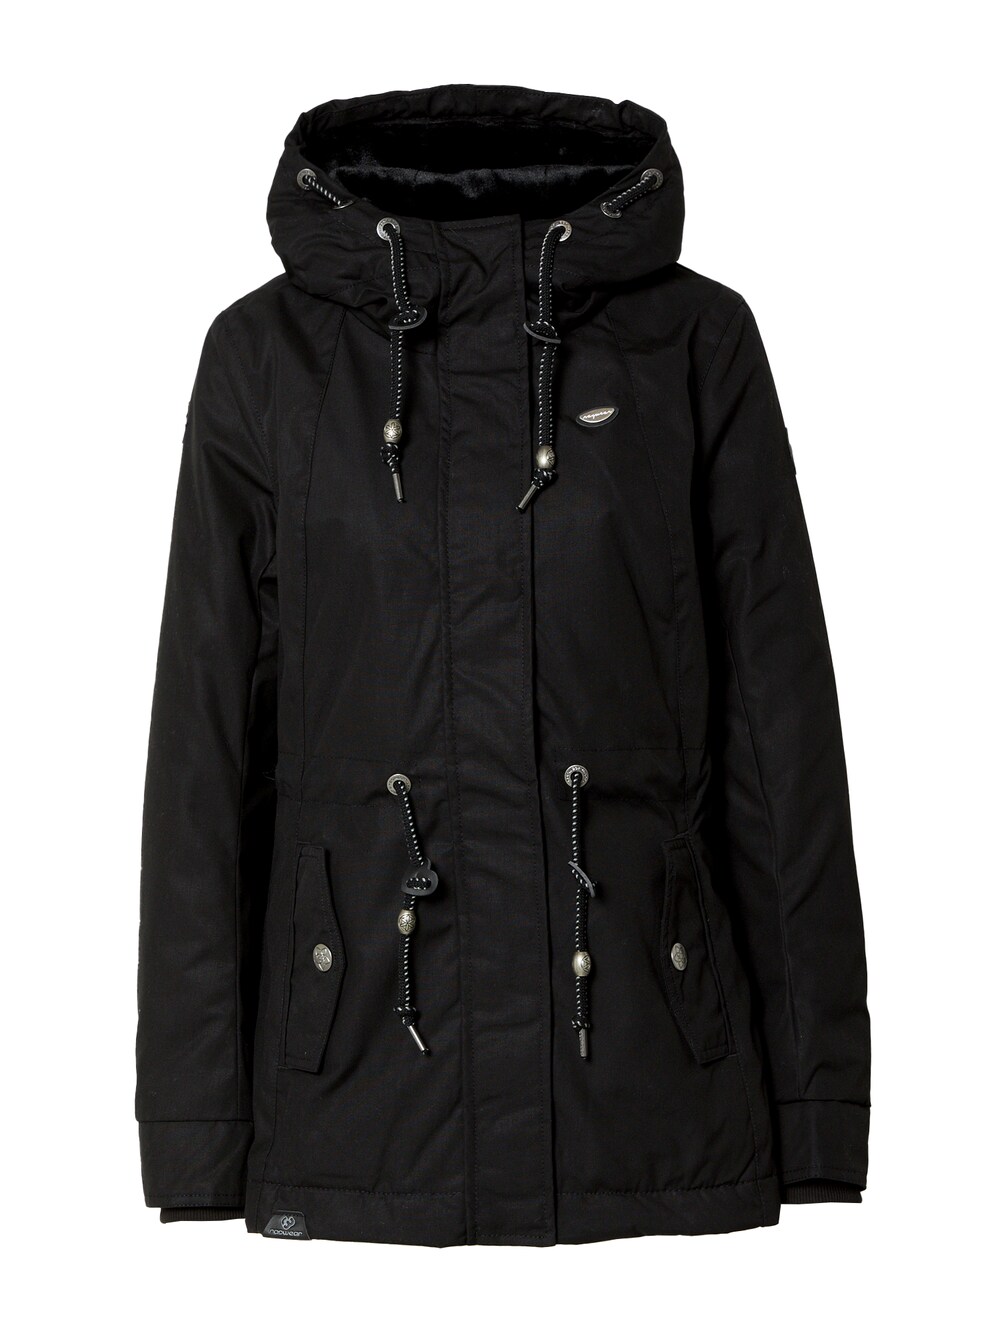 Межсезонная куртка Ragwear MONADIS, черный межсезонная куртка ragwear margge оливковый